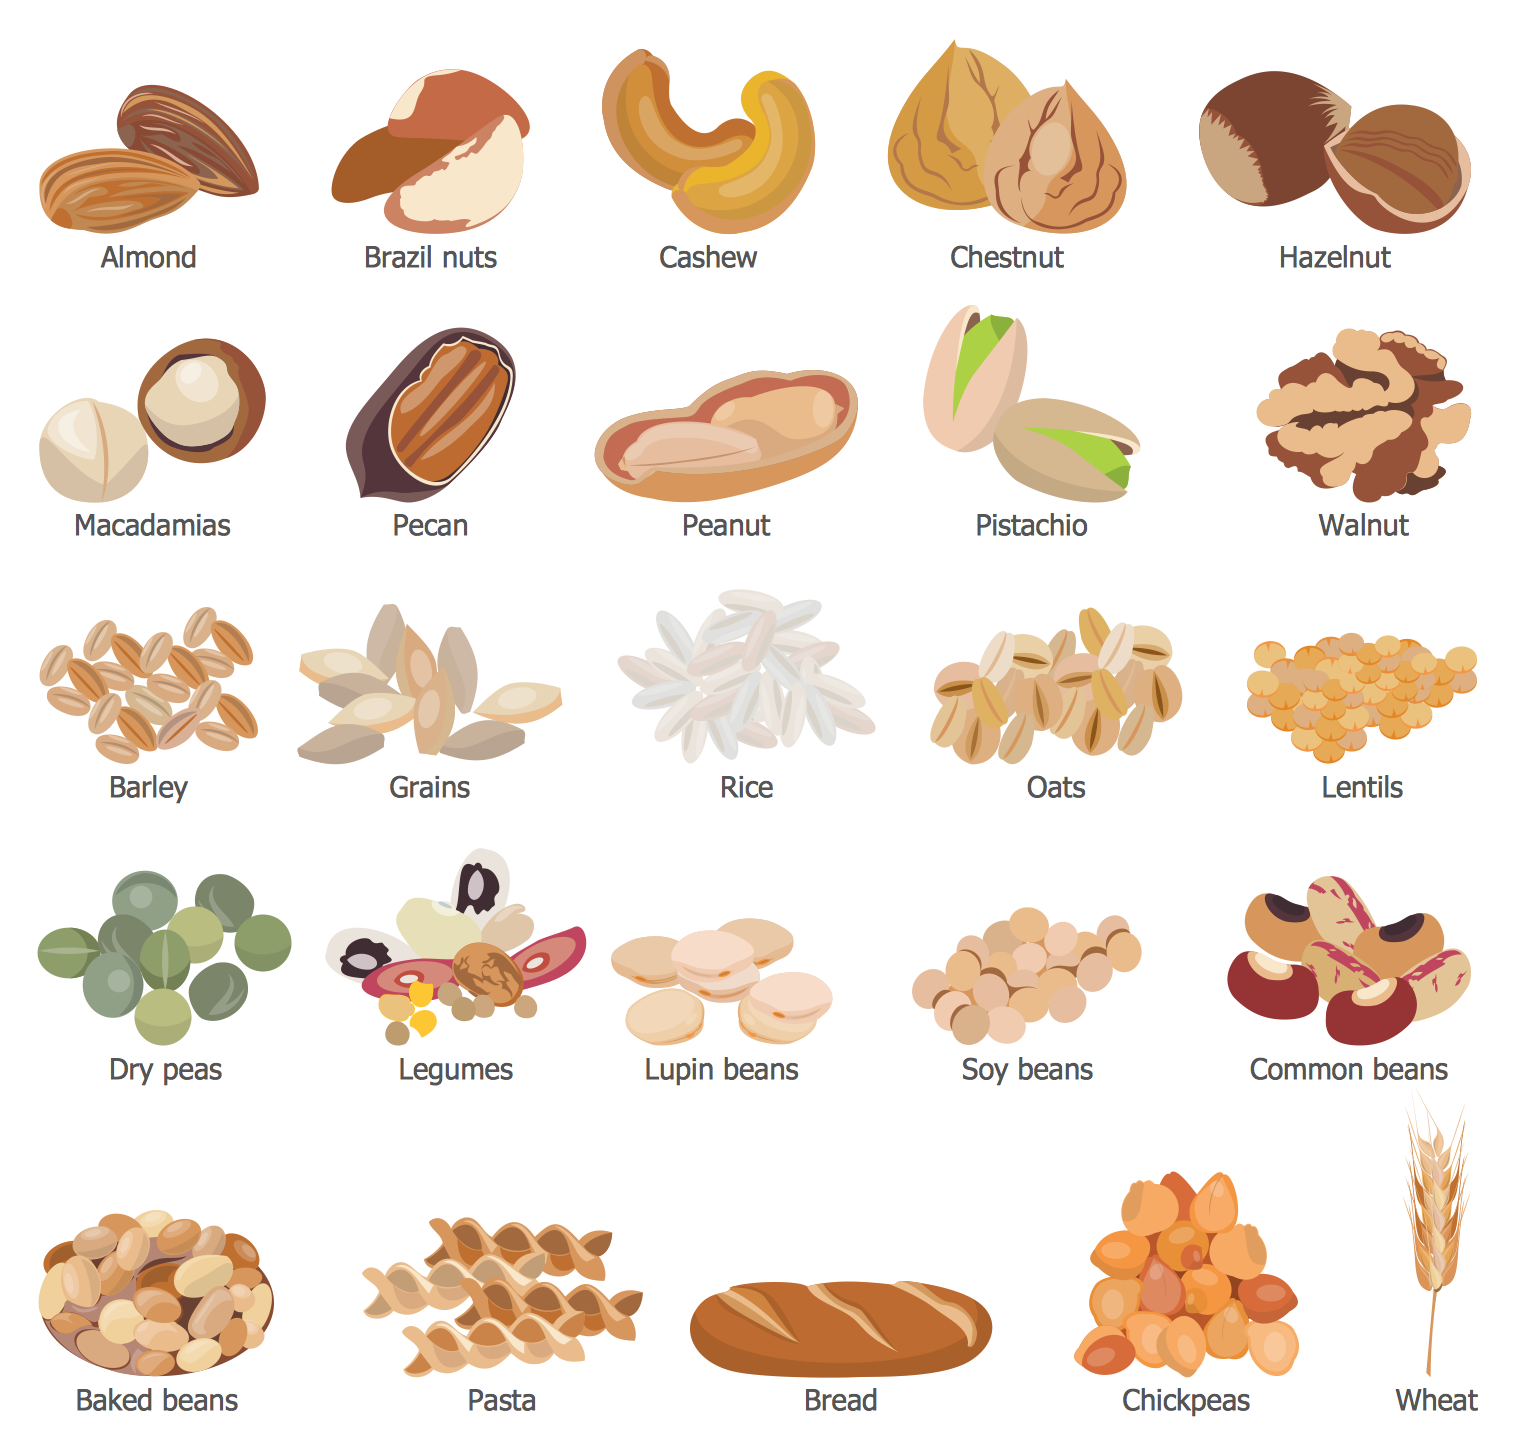 Grains, Beans, Legumes, Nuts